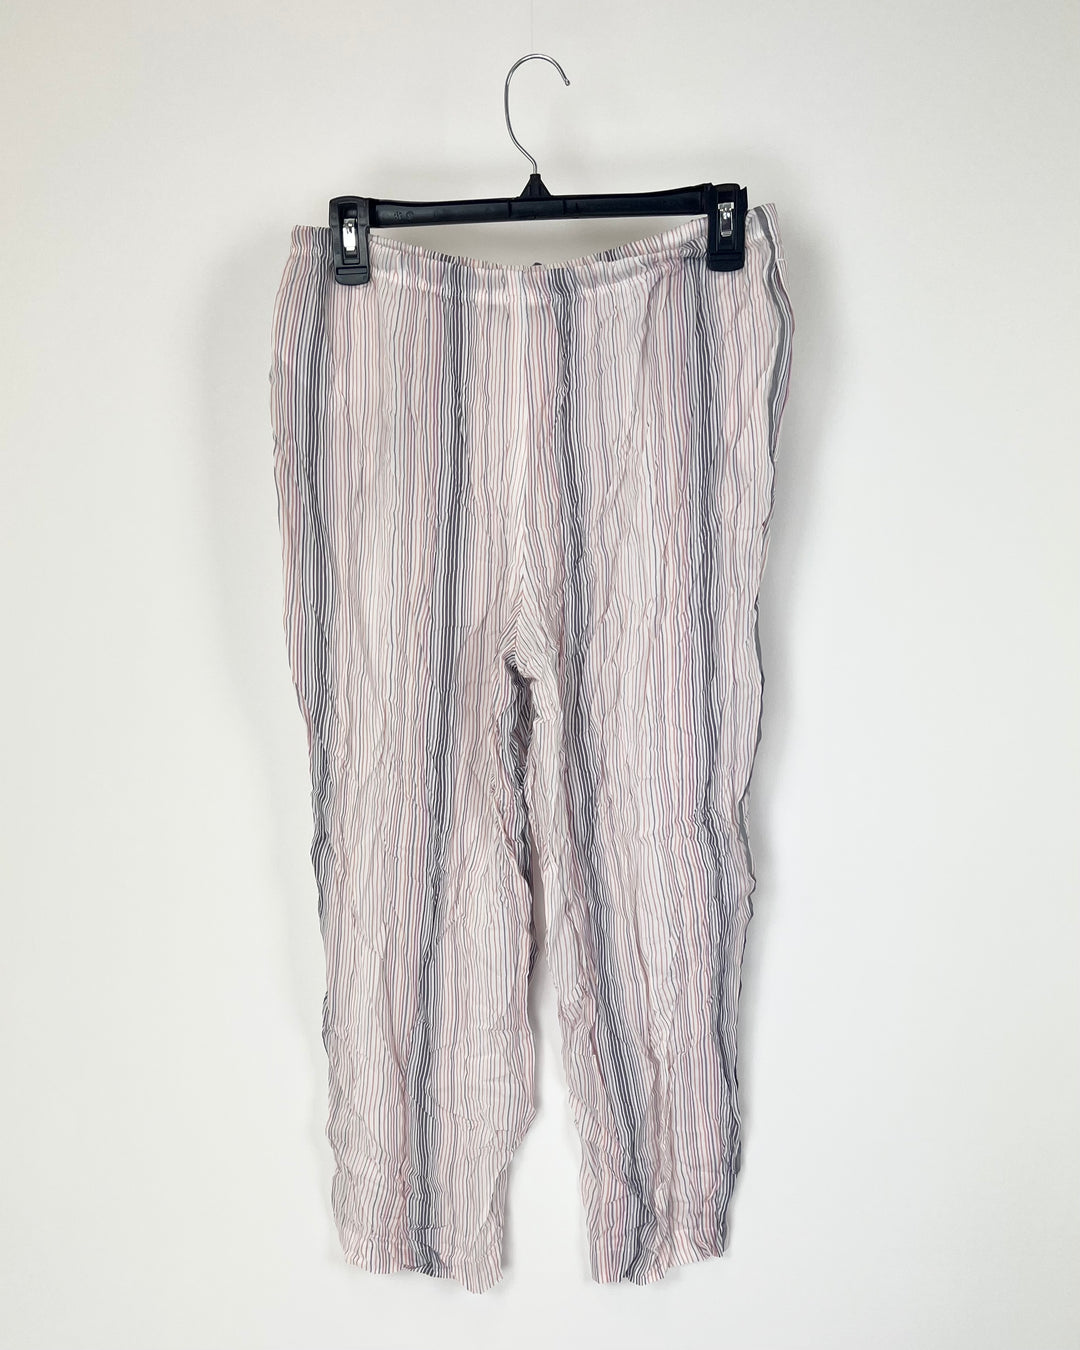 MultiColored Capri Sleepwear Pants - Size 6